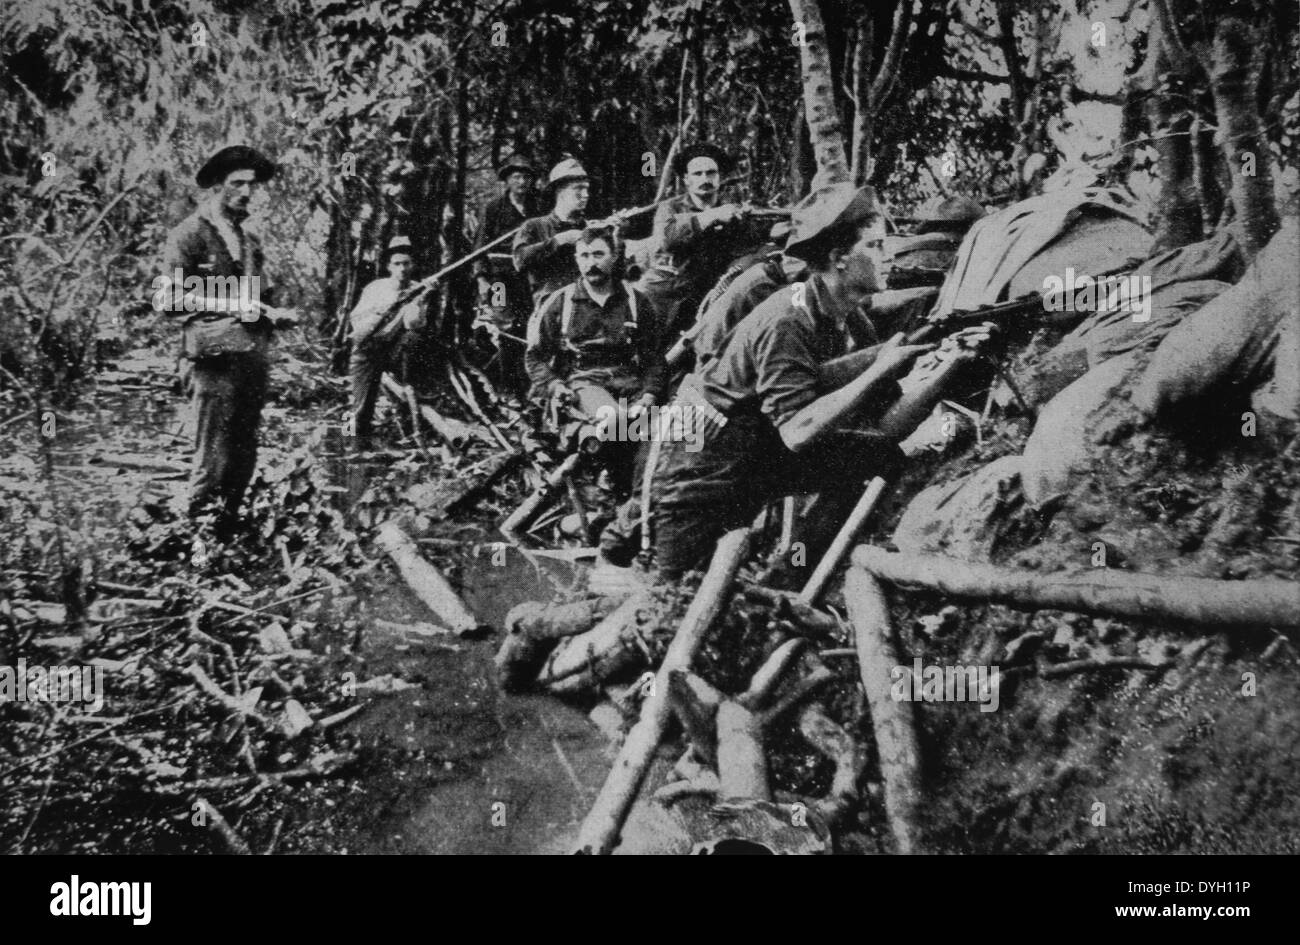 Des soldats américains au combat près de Manille au cours de guerre américano-philippine, vers 1900 Banque D'Images